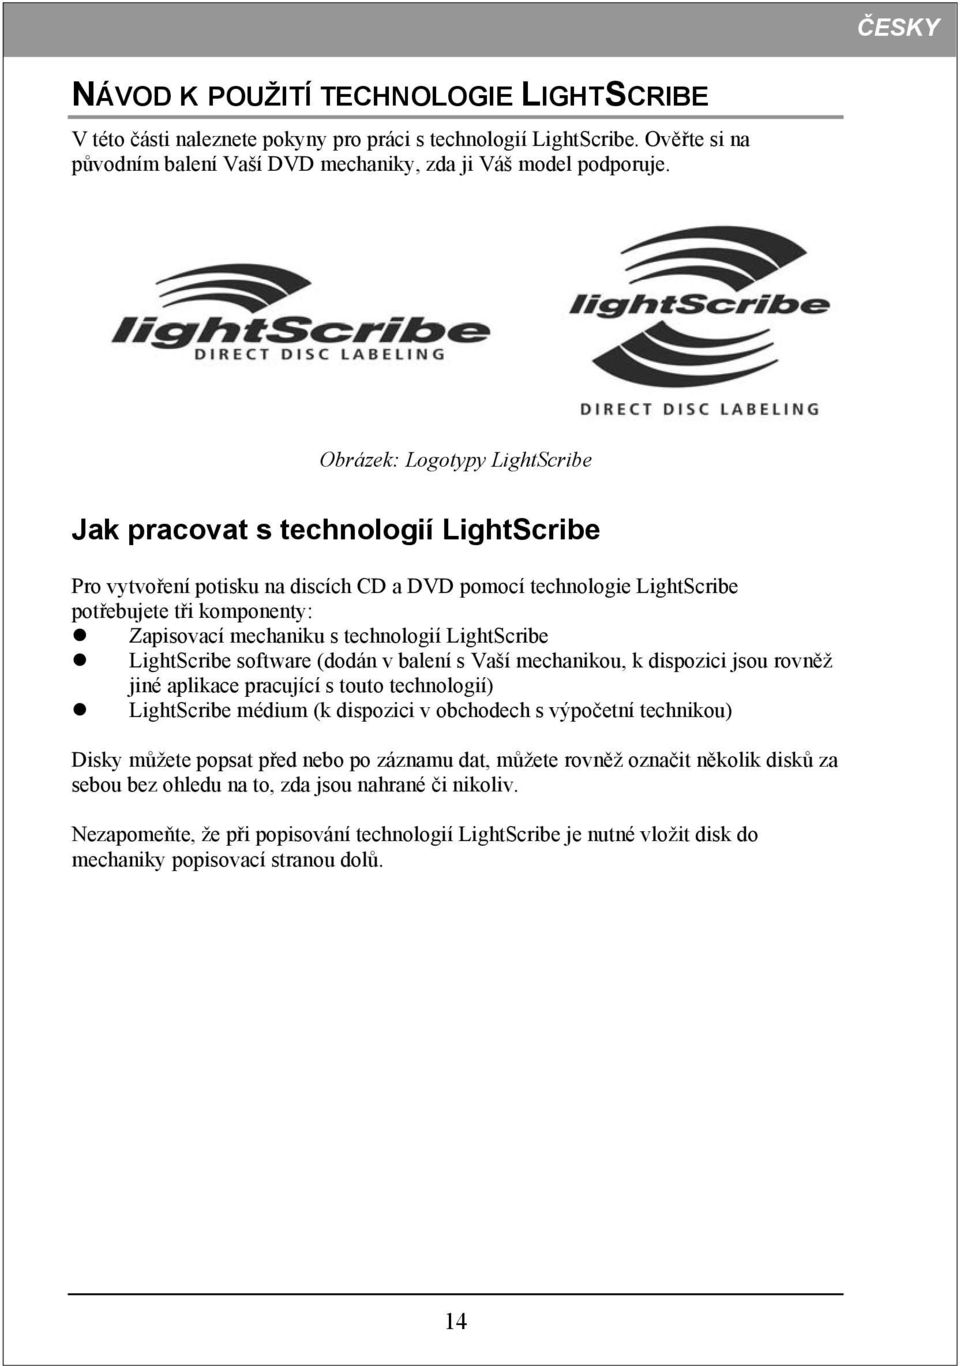 technologií LightScribe LightScribe software (dodán v balení s Vaší mechanikou, k dispozici jsou rovněž jiné aplikace pracující s touto technologií) LightScribe médium (k dispozici v obchodech s